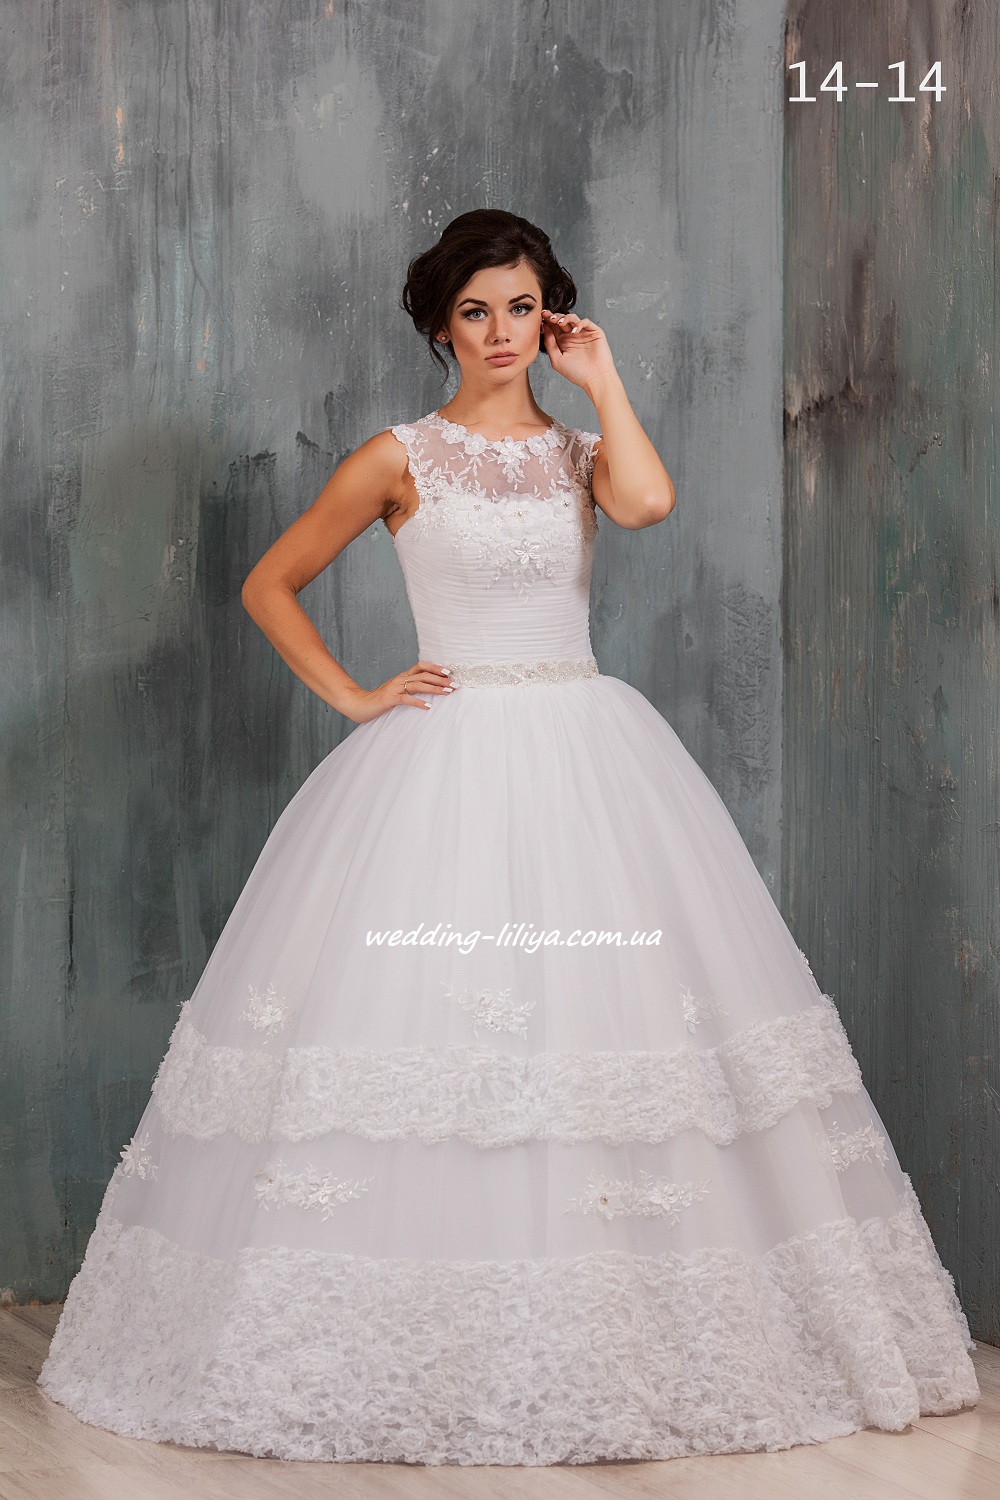 Свадебное платье №14-14